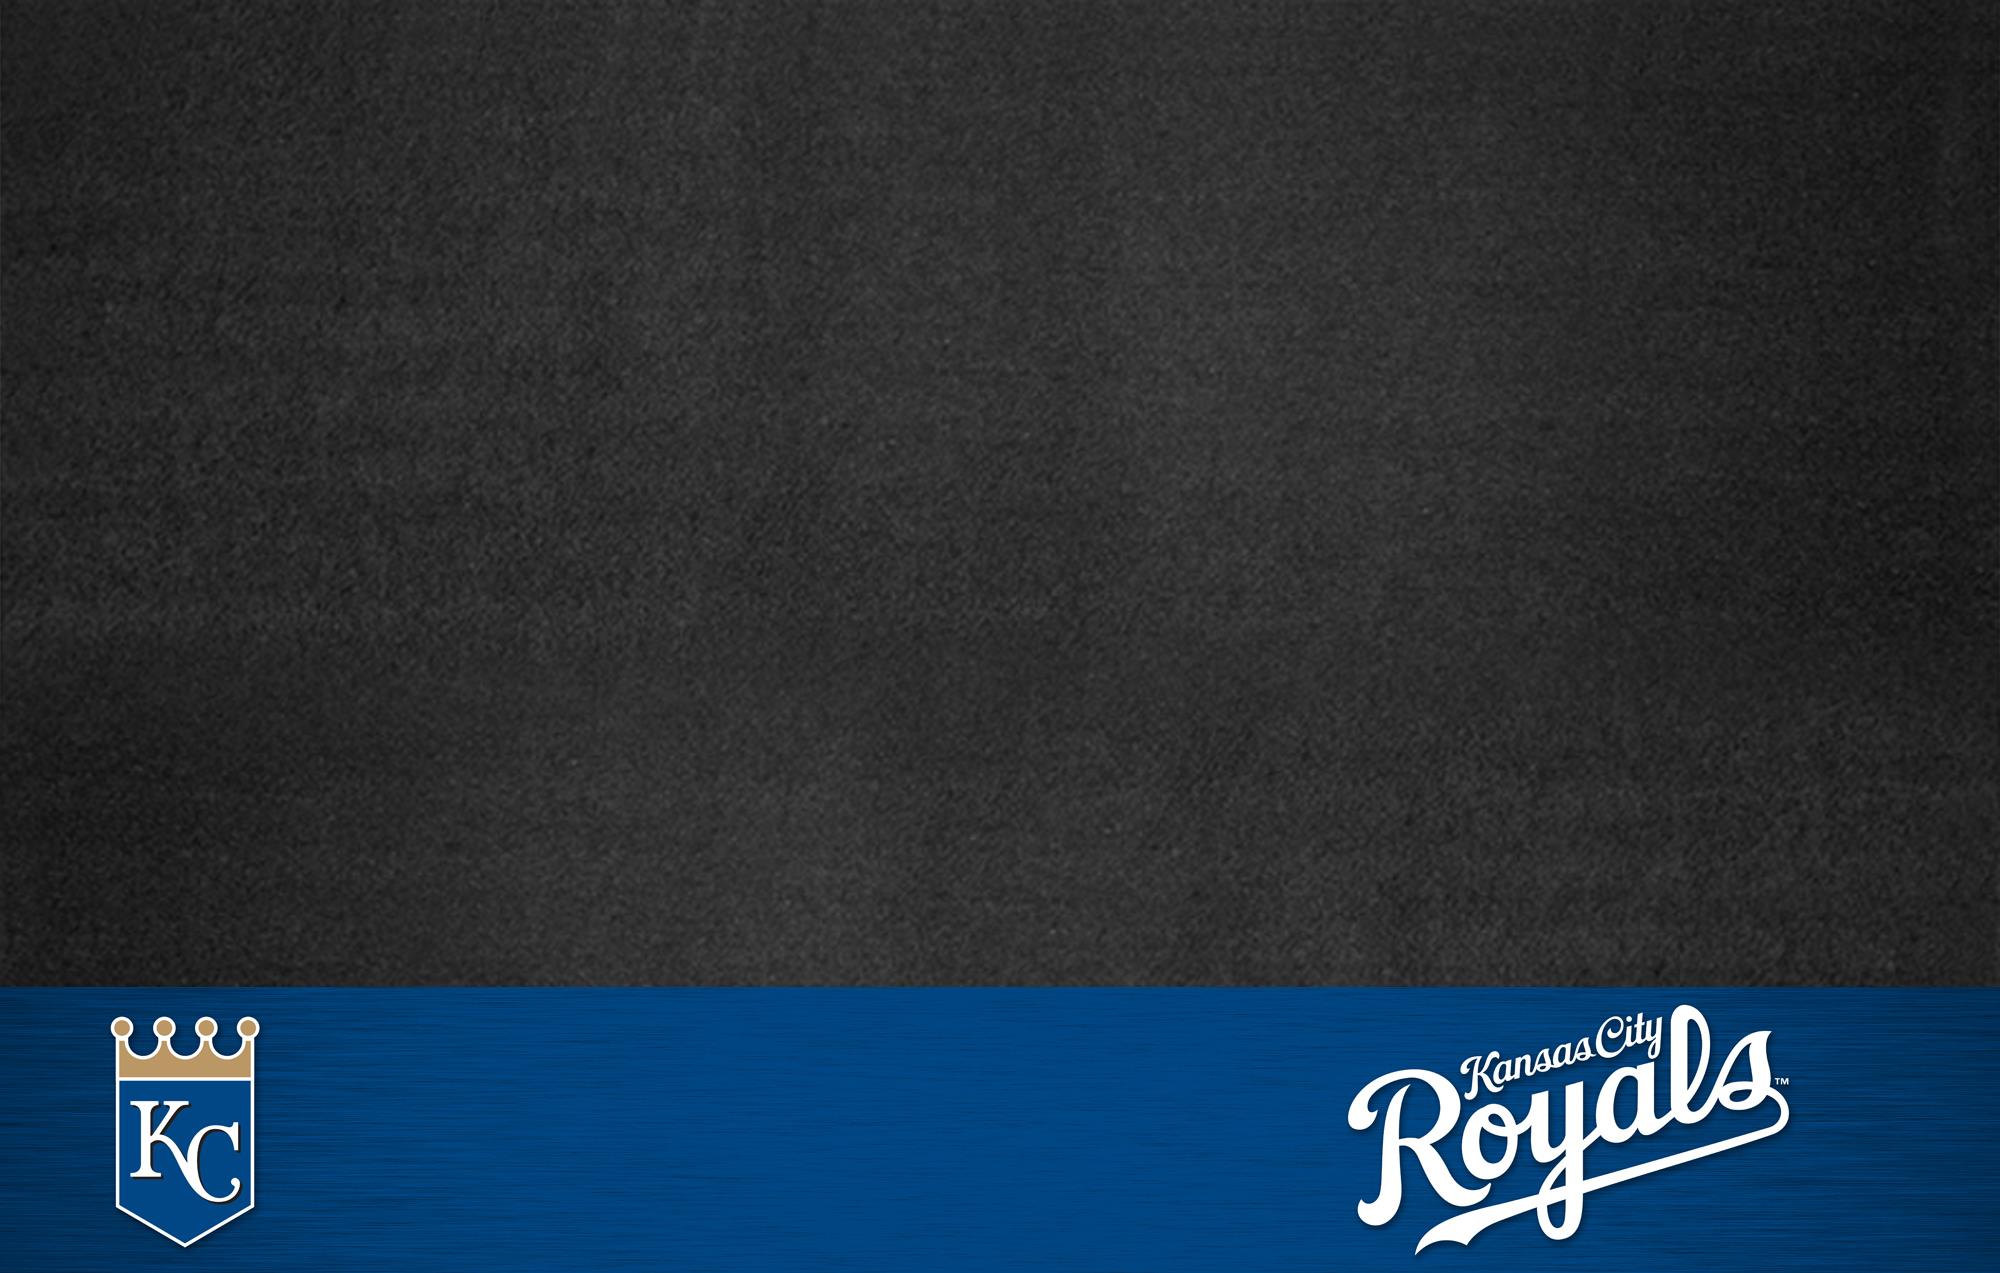 kansas city royals mlb baseball wallpaper background by wallpaperup